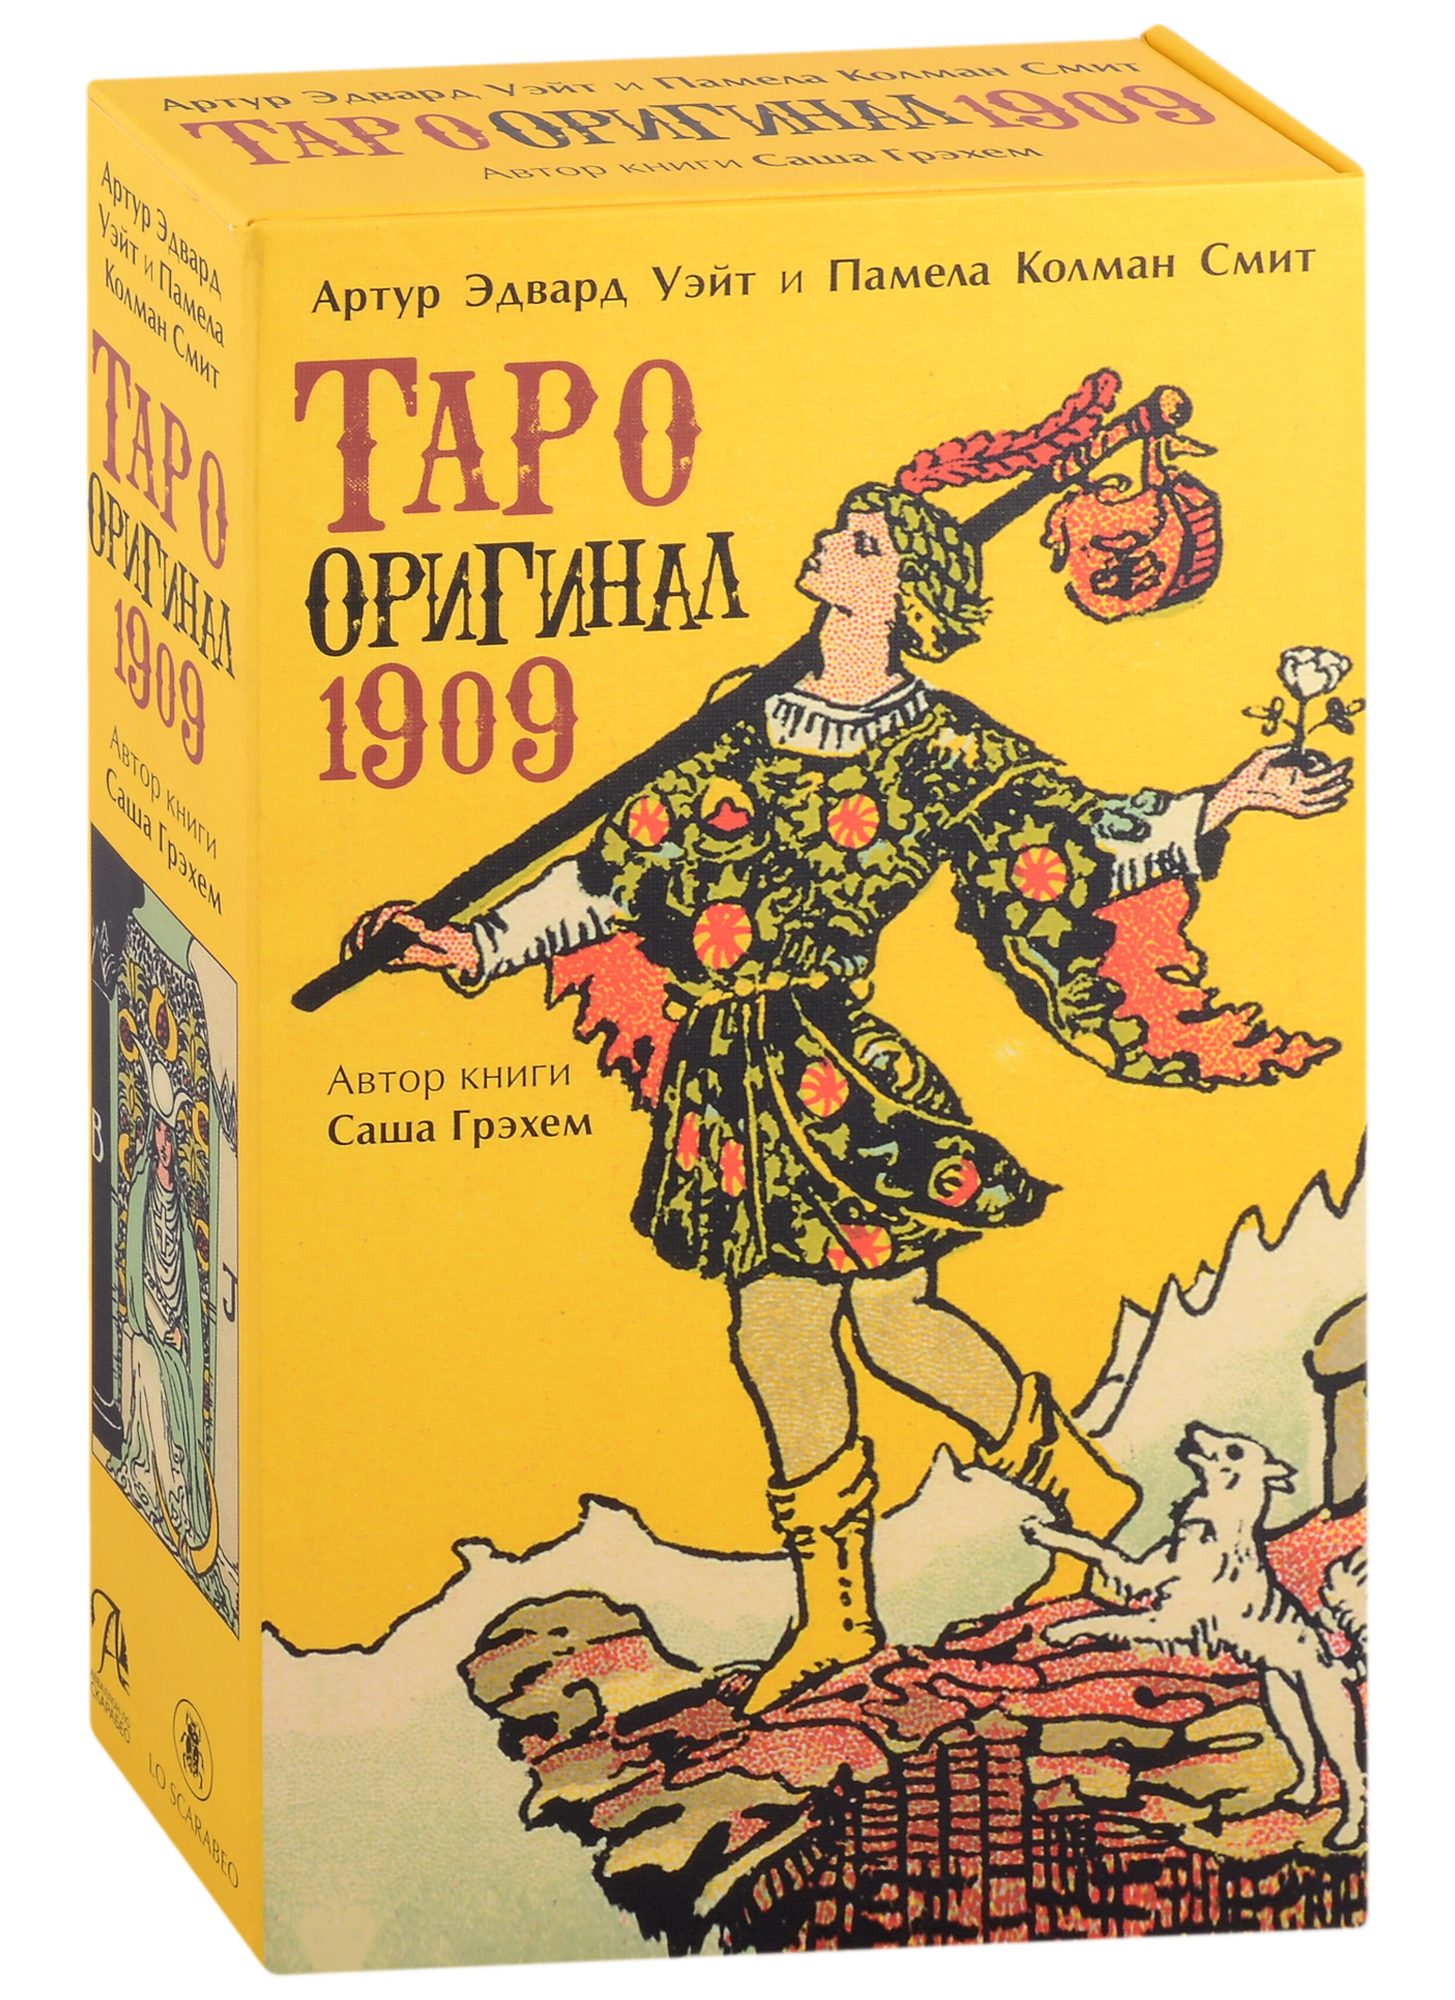 Набор Таро Оригинал 1909 rws tarot таро колман смитт и эдварда уэйта на англ яз 78 карт ex175 коробка